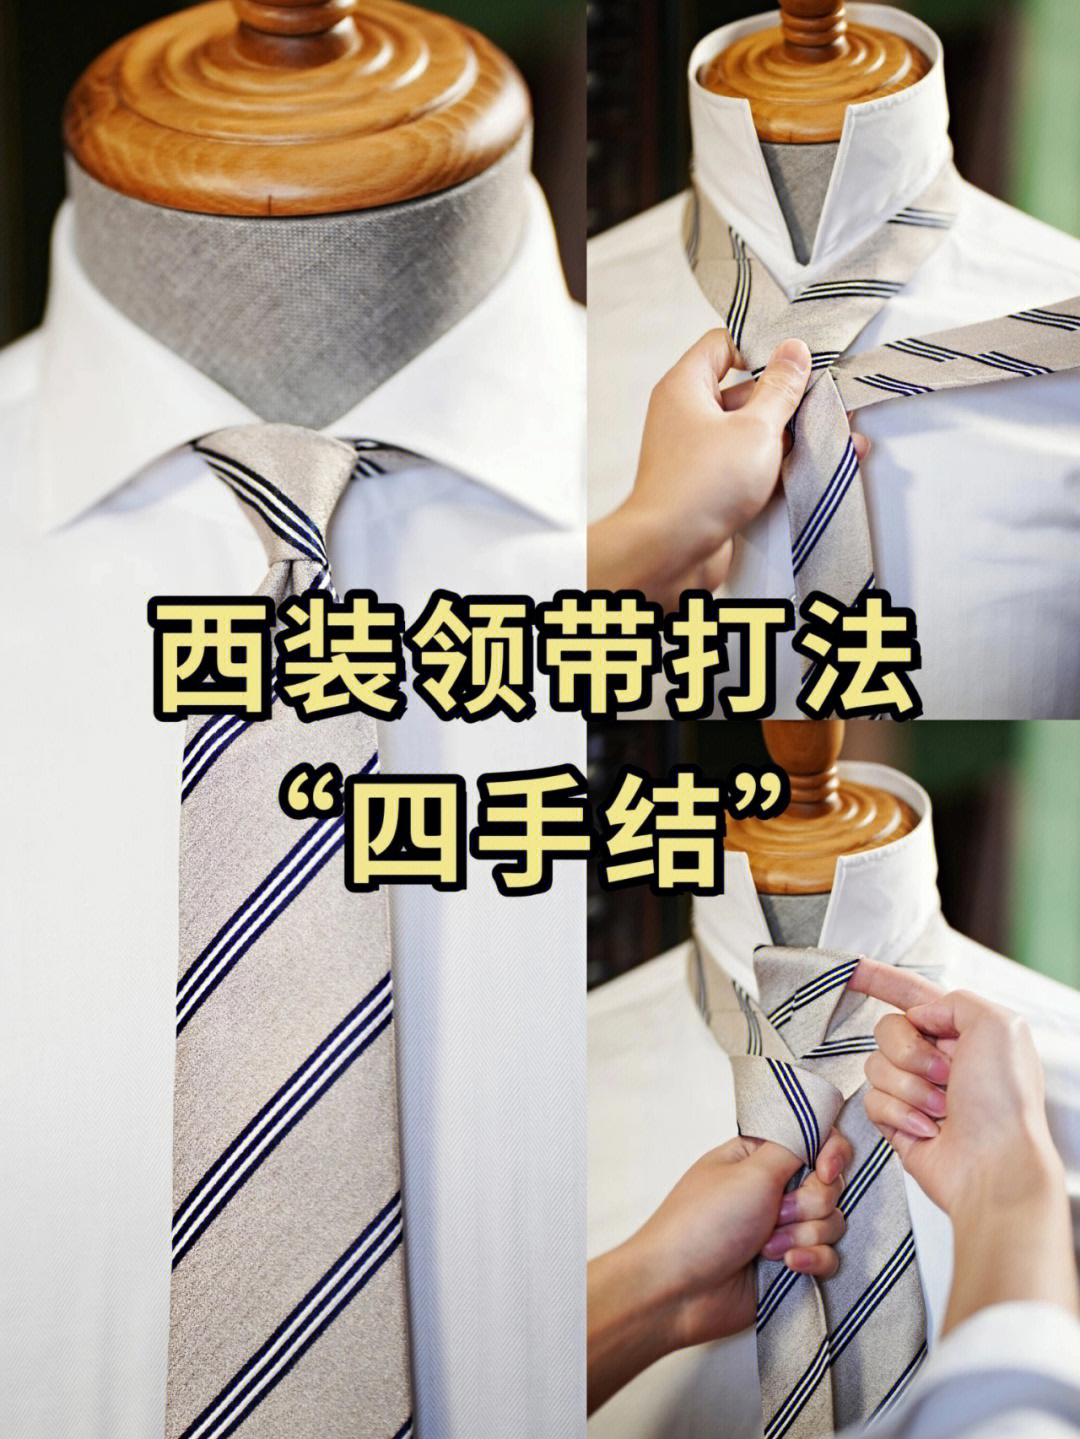 领带简易打法图解法图片